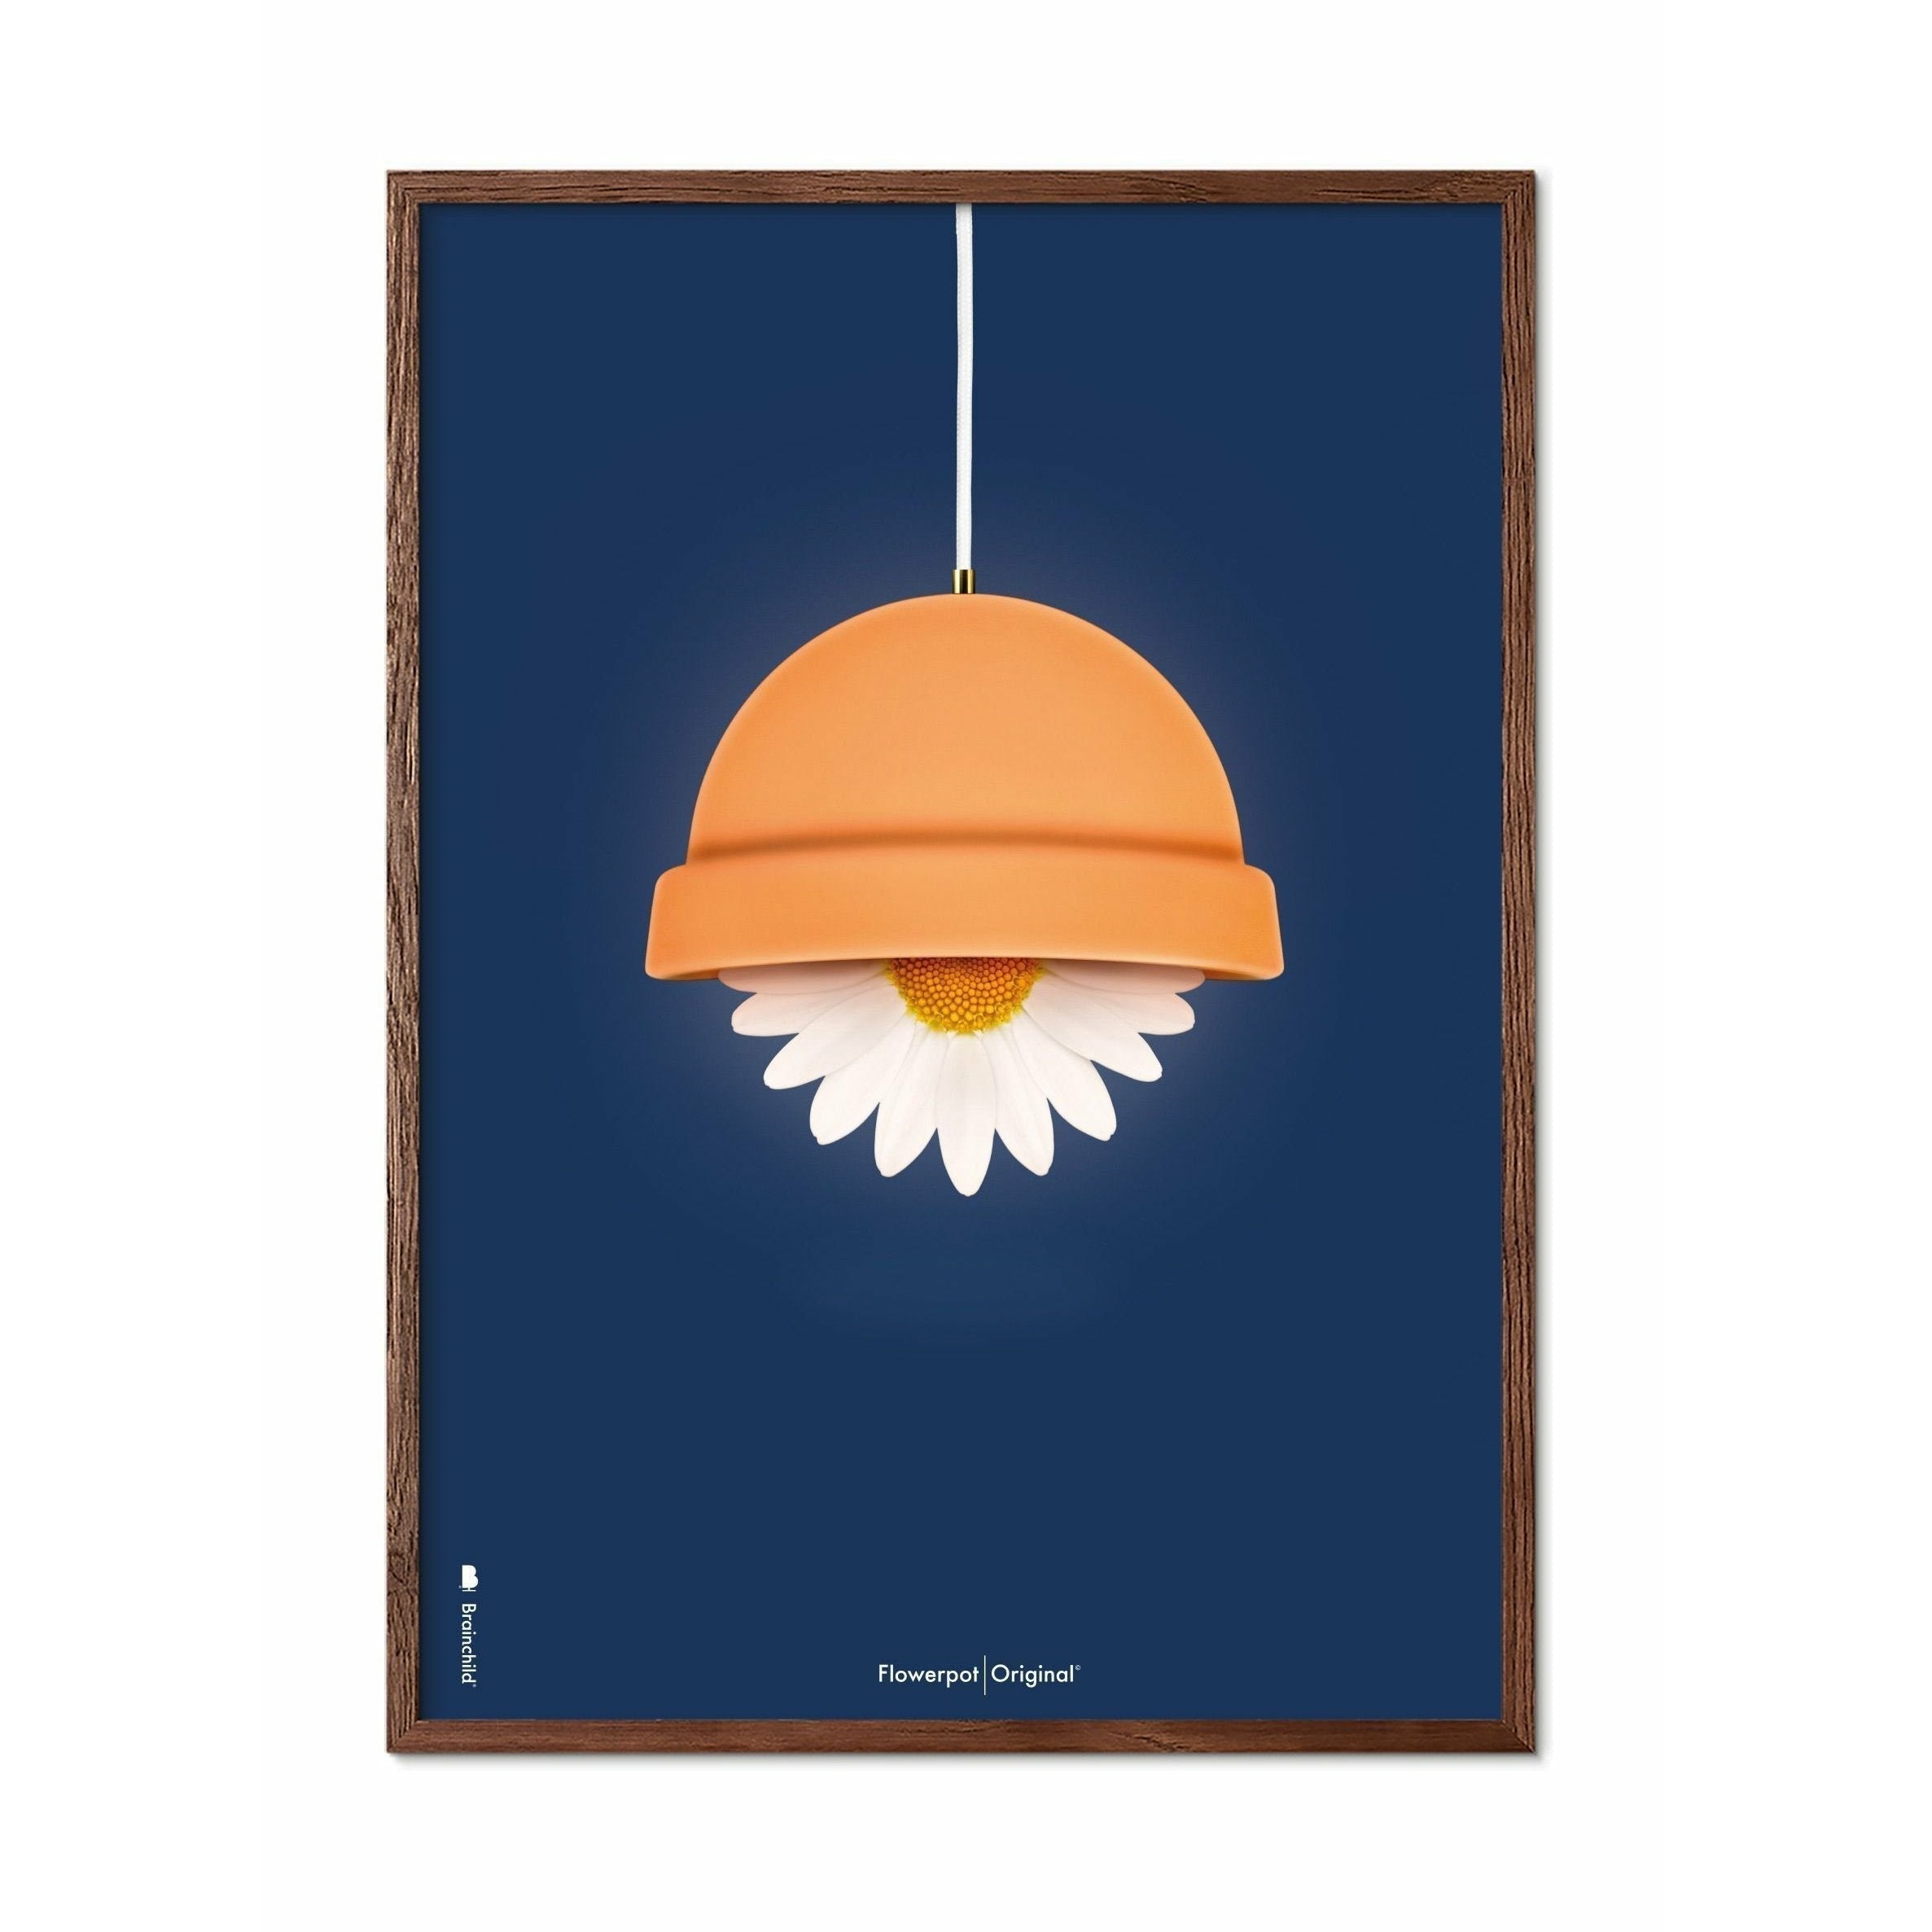 Brainchild Flowerpot Classic Affisch, Dark Wood Frame 50x70 cm, mörkblå bakgrund